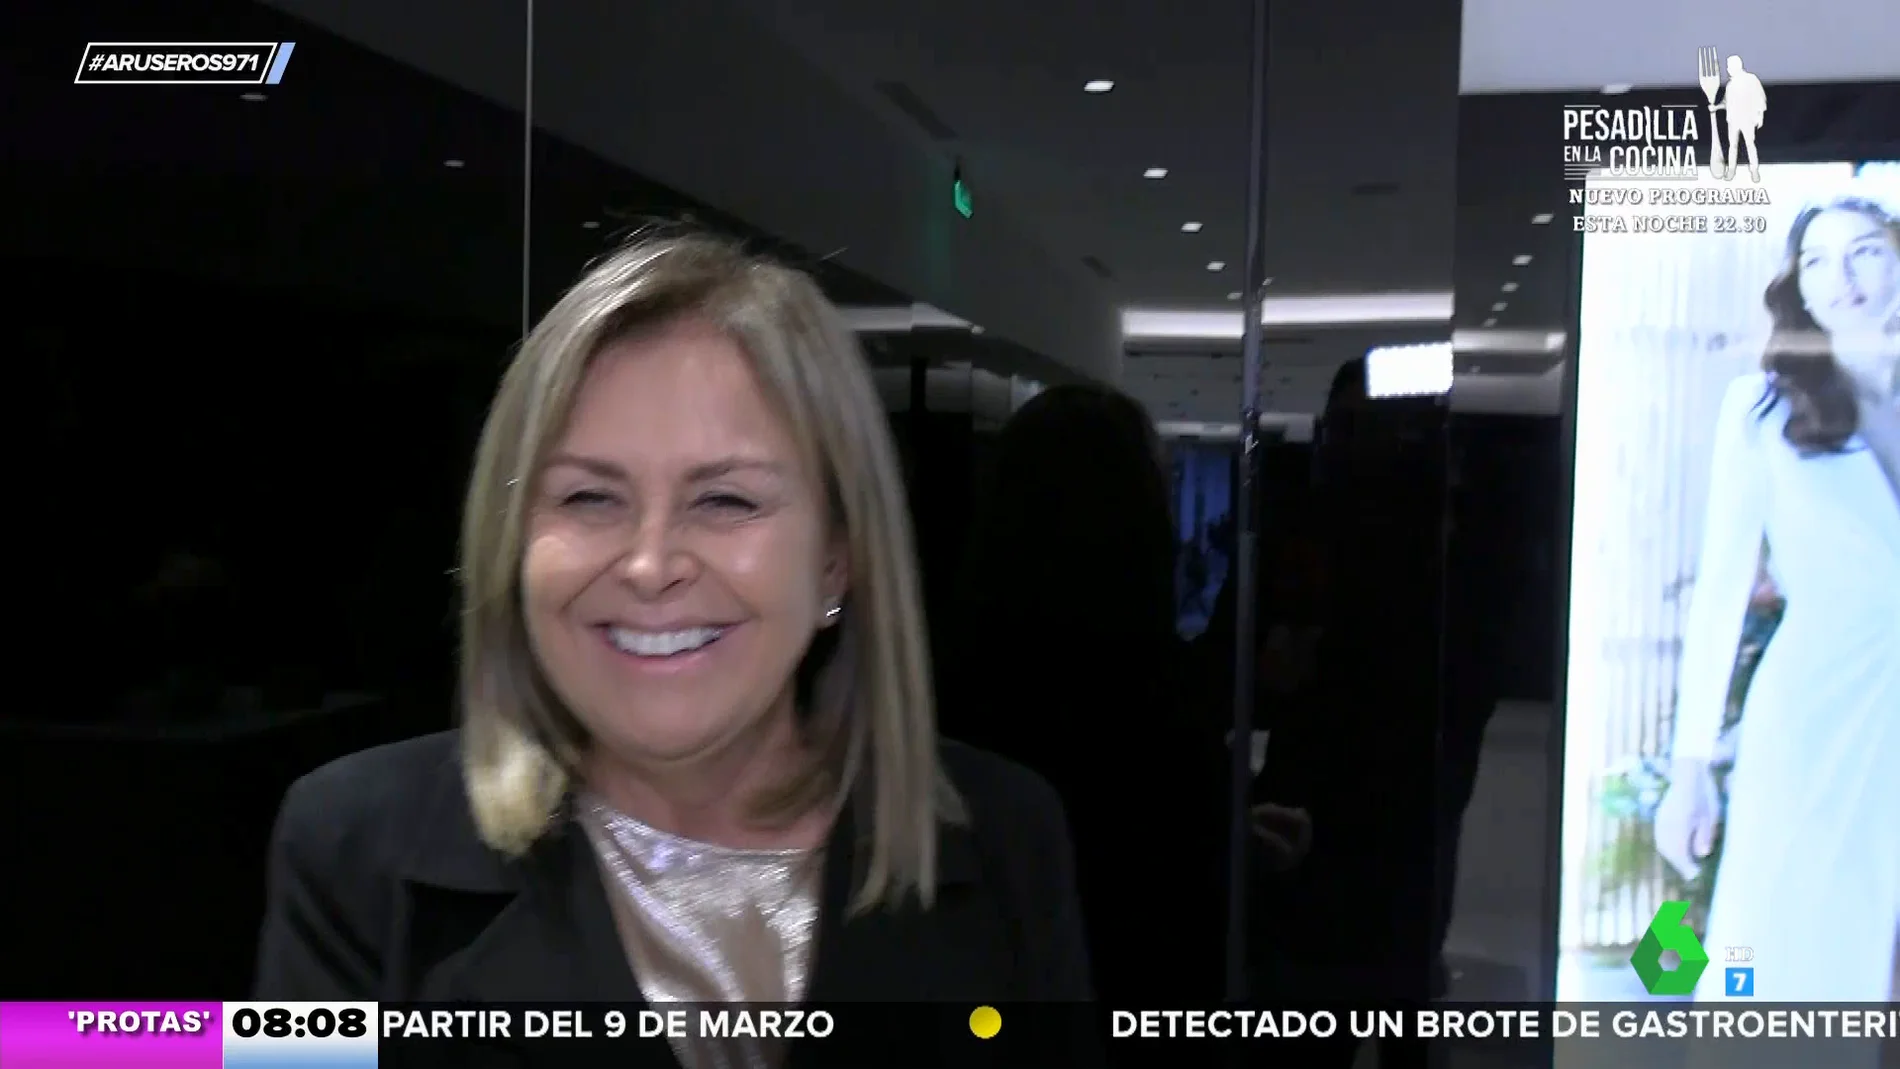 La "sonrisa delatora" de Rosa Clará al hablar de la relación de Paloma Cuevas y Luis Miguel